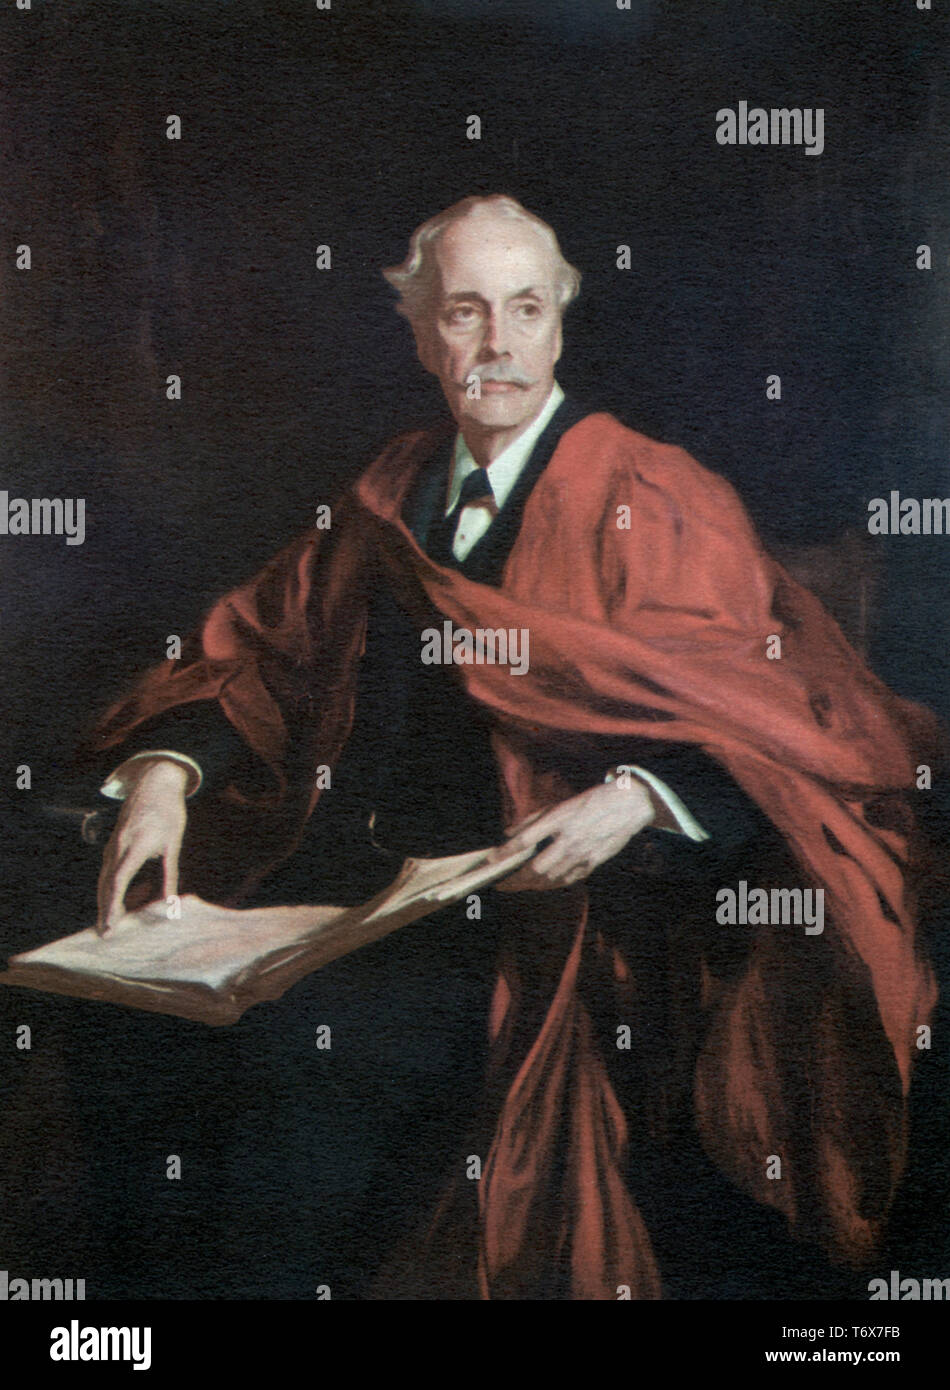 Arthur James Balfour, 1st conte di Balfour (1848-1930). Di Philip Alexius de László (1869-1937). Balfour era uno statista britannico e un politico del Partito conservatore che serviva come primo Ministro e Segretario agli Esteri del Regno Unito. Foto Stock